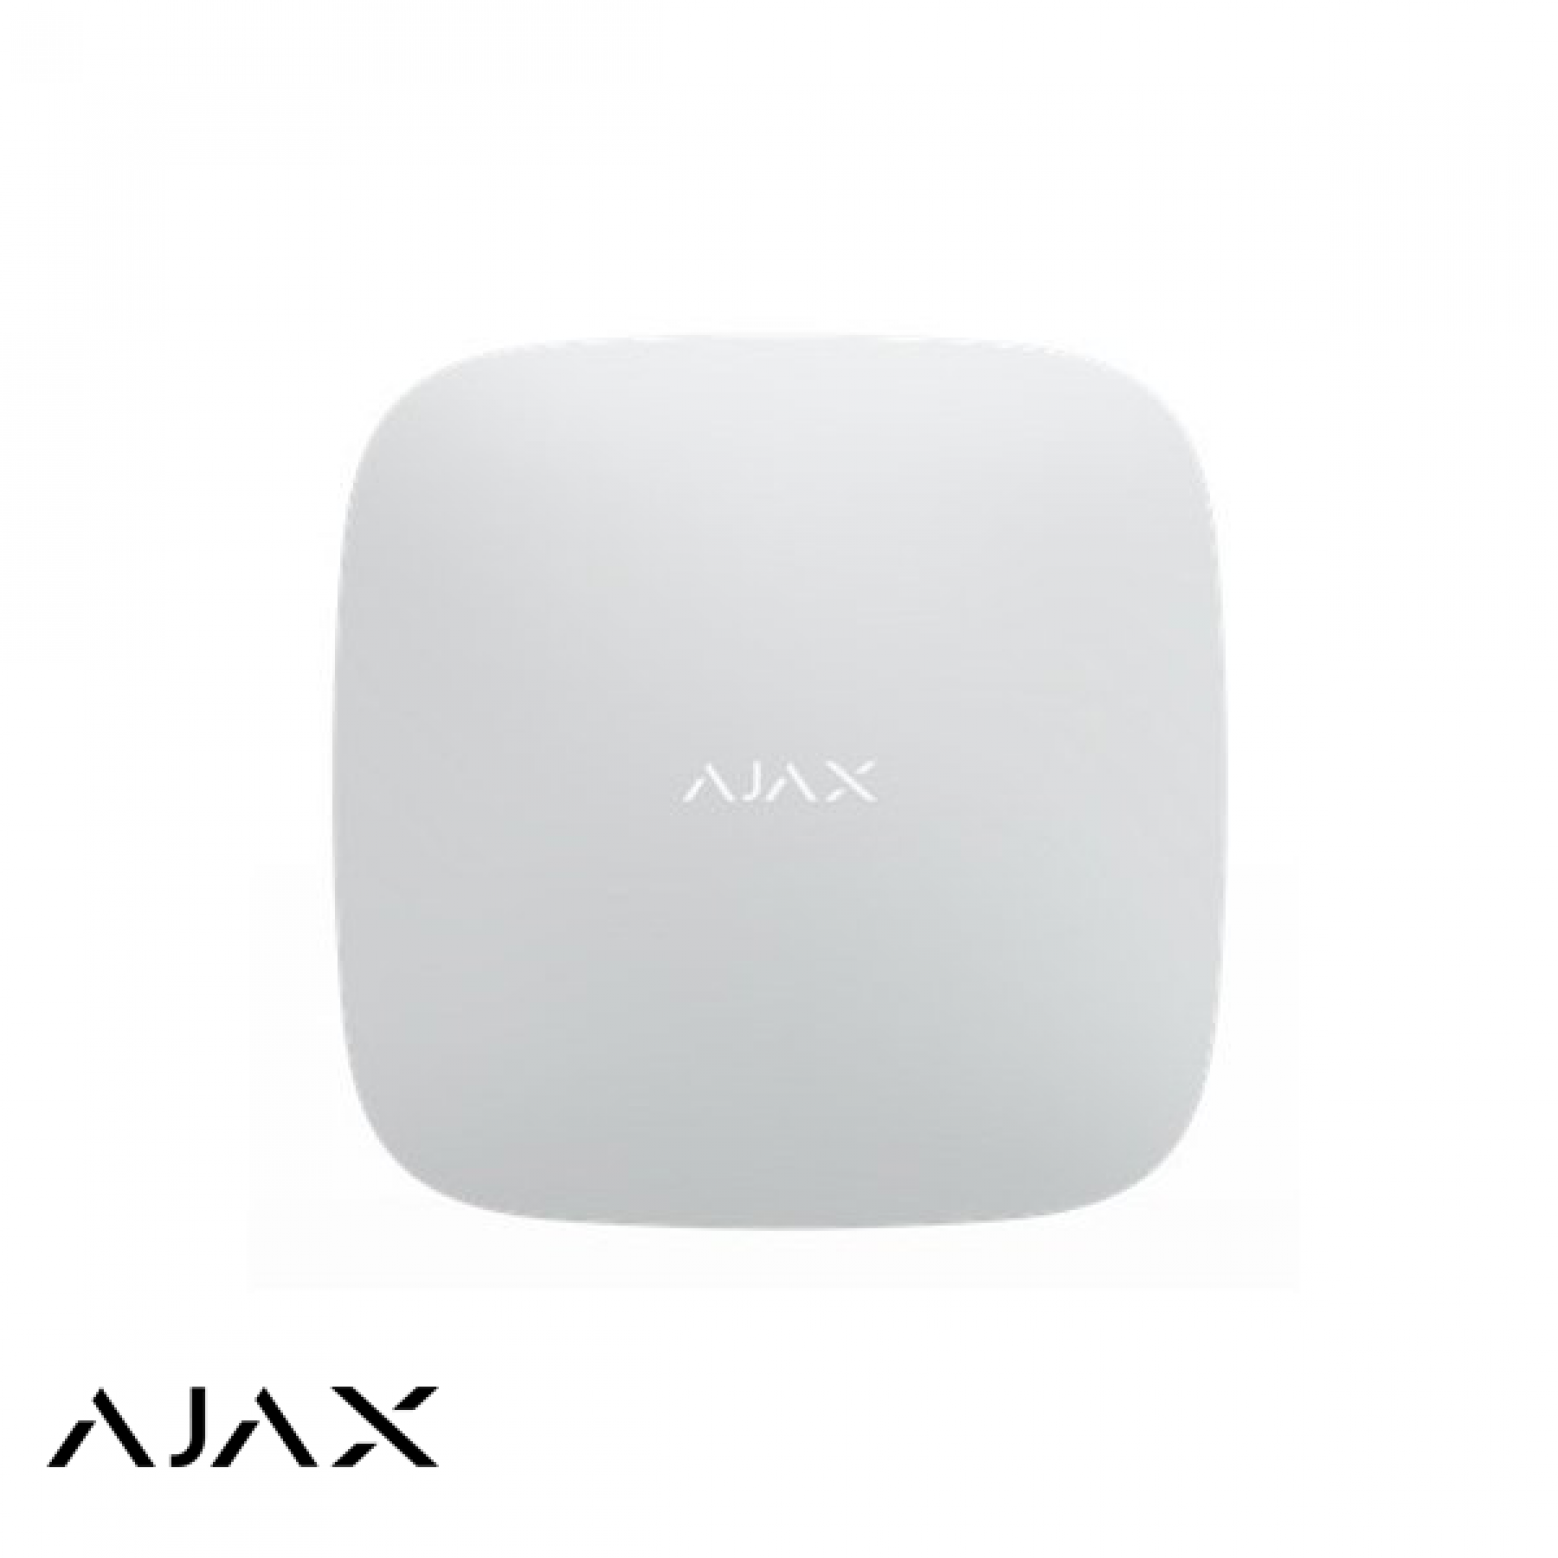 AJAX hub draadloos alarmsysteem wit/zwart